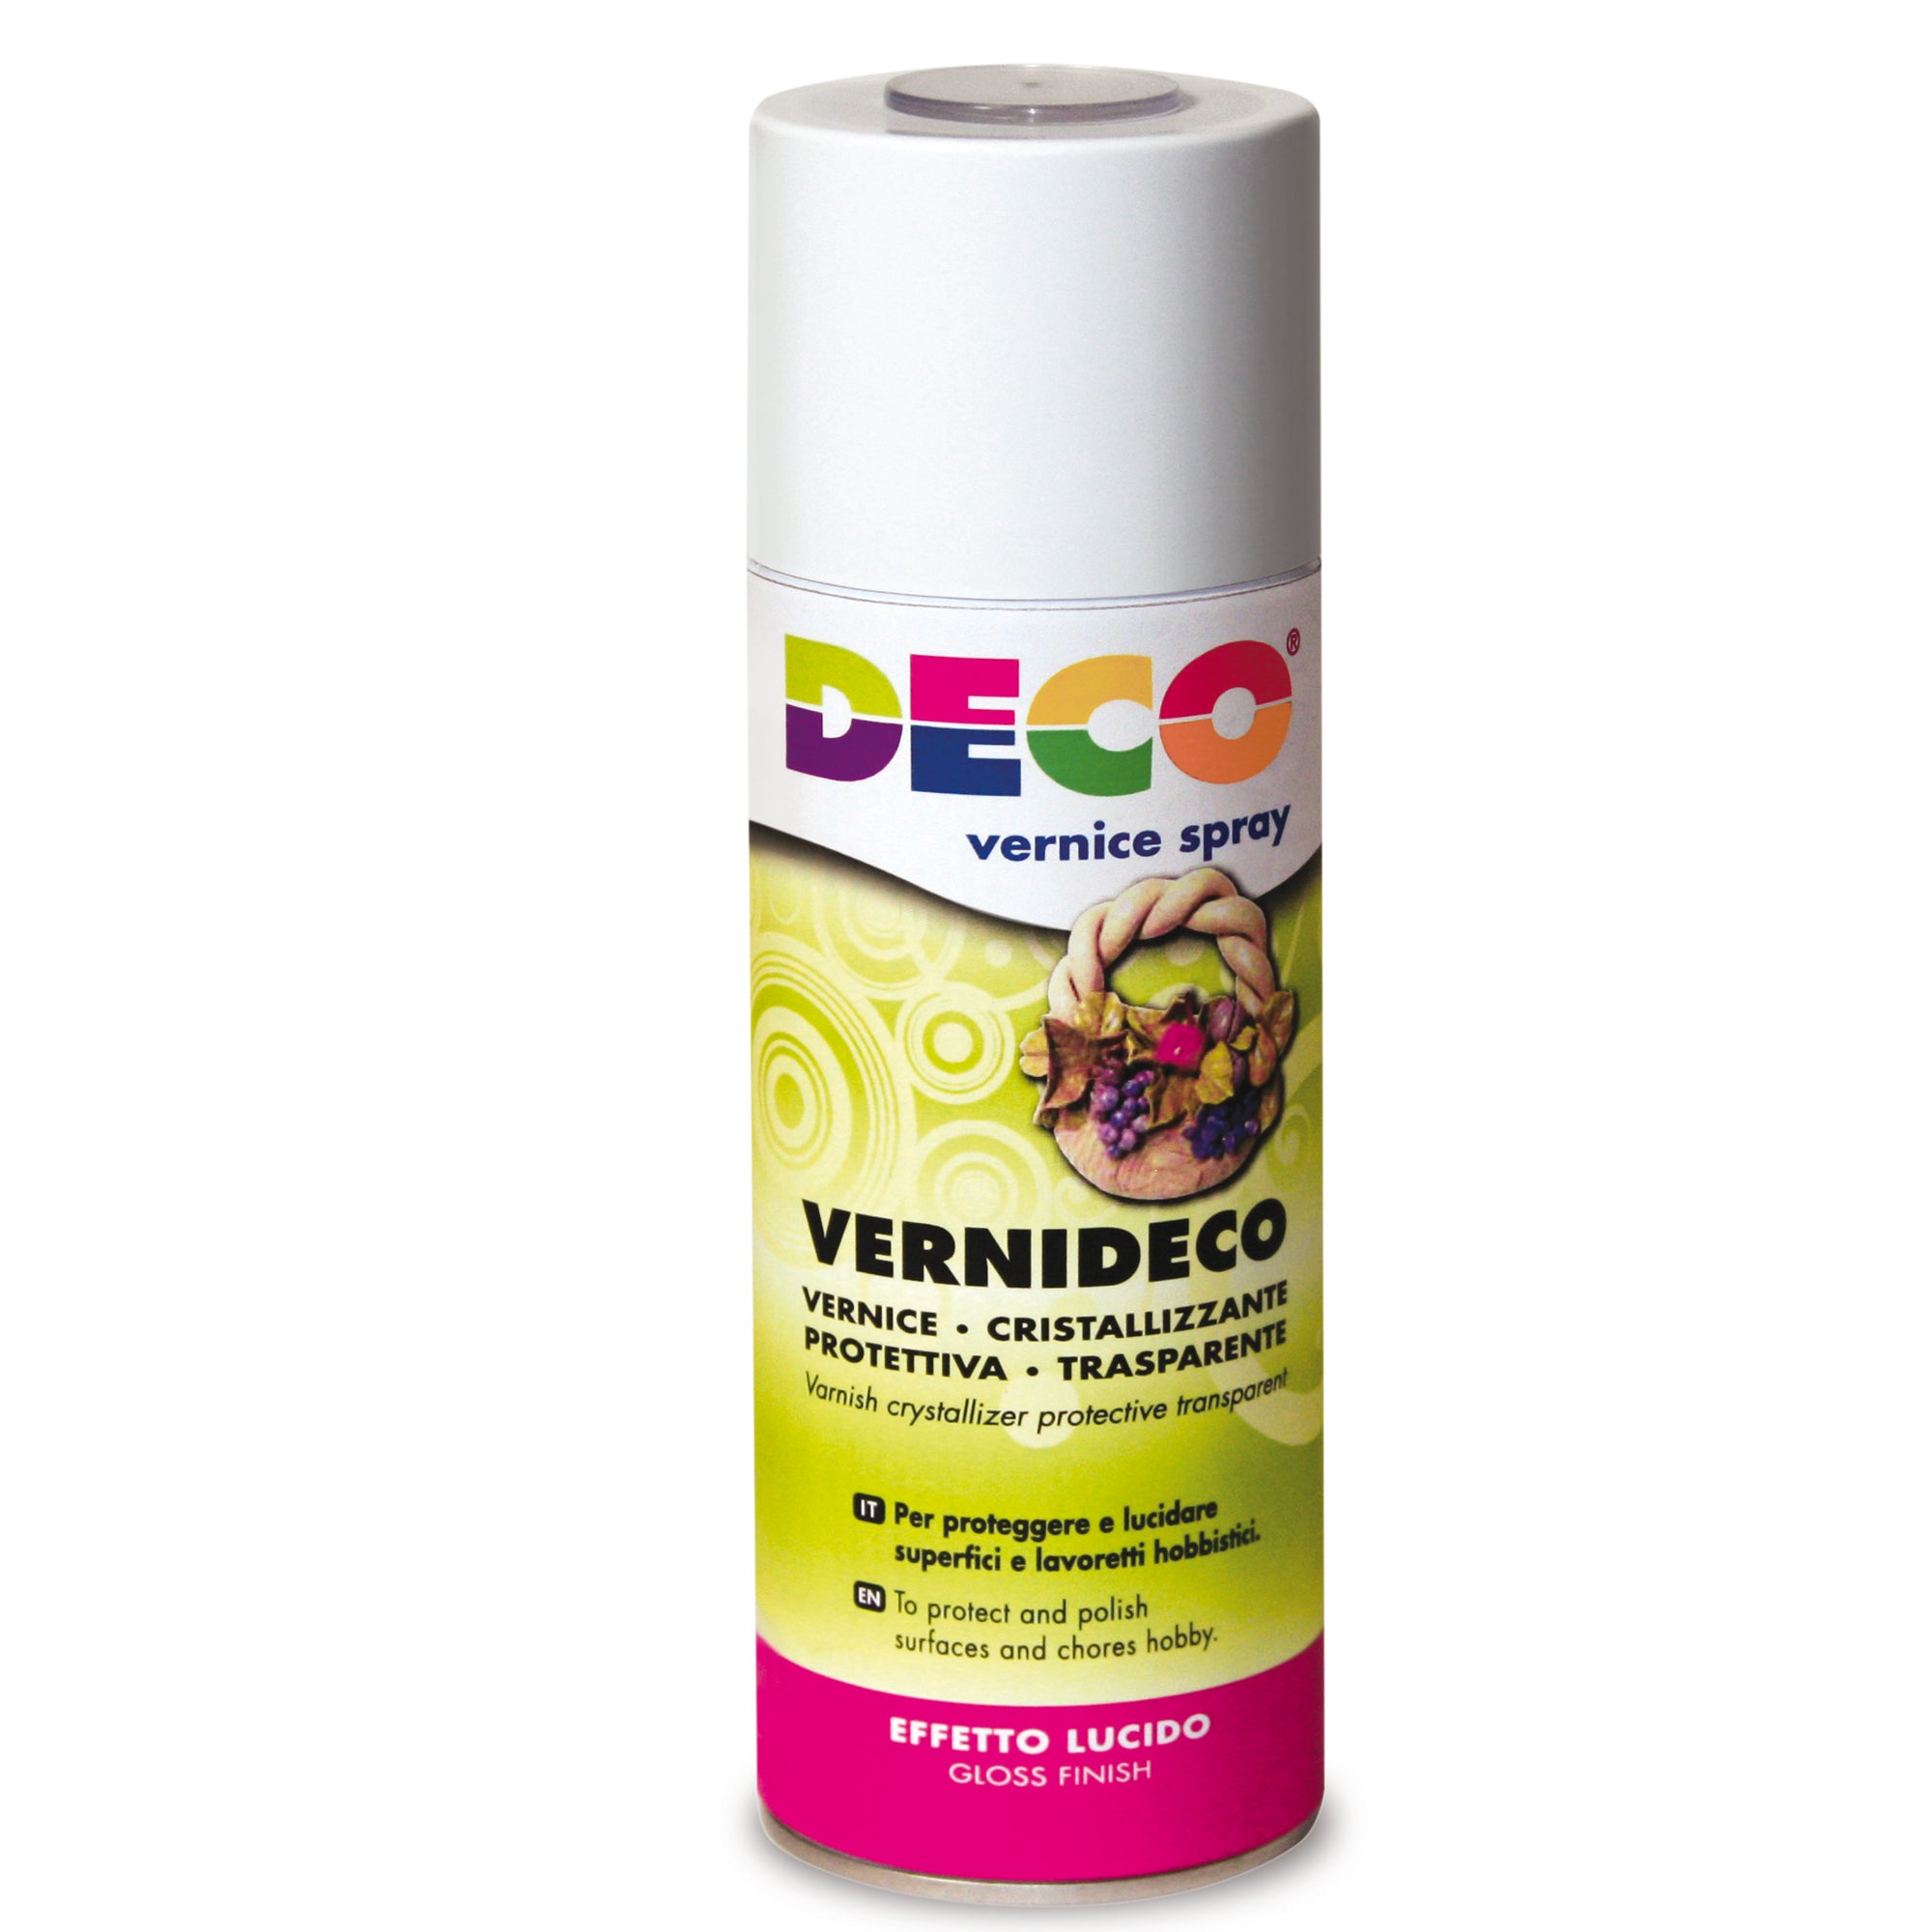 deco-vernice-spray-cristallizzante-laccata-universale-400ml-622